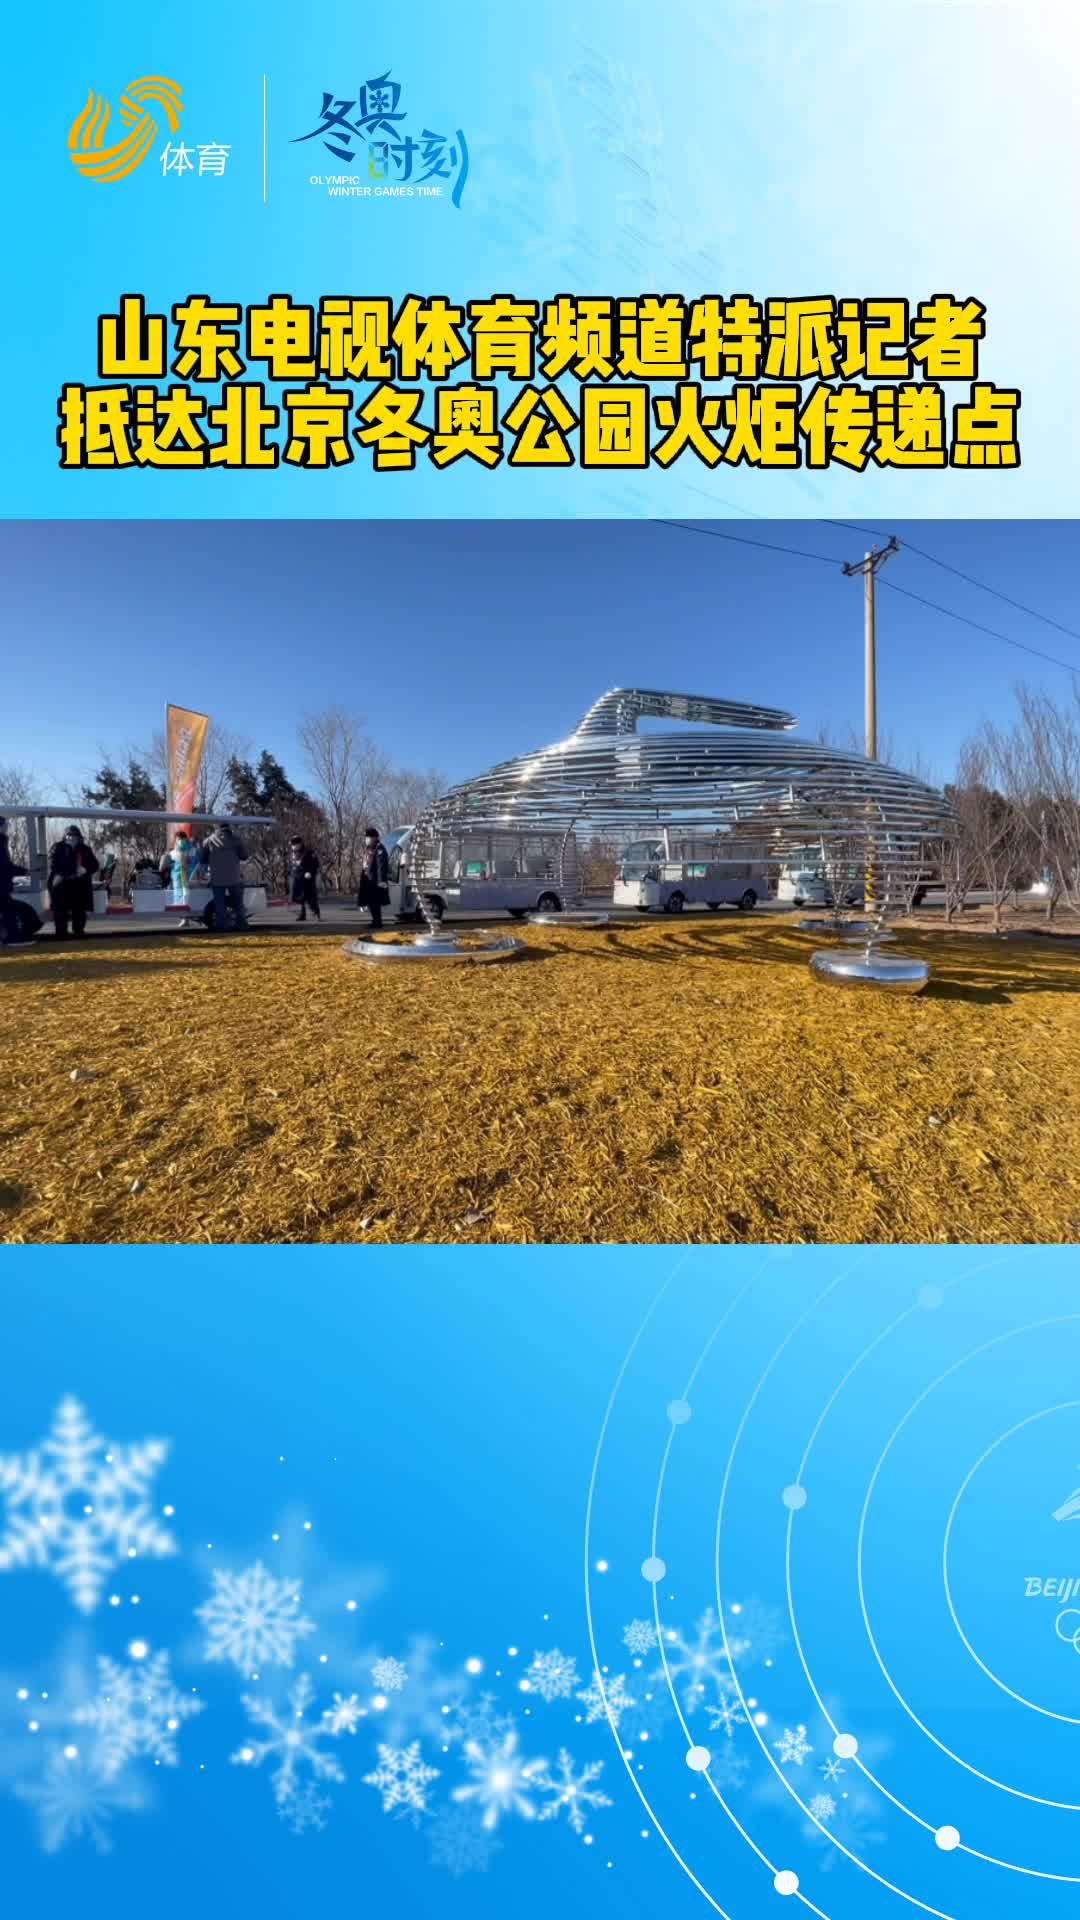 冬奥时刻丨山东电视体育频道特派记者抵达北京冬奥公园火炬传递点